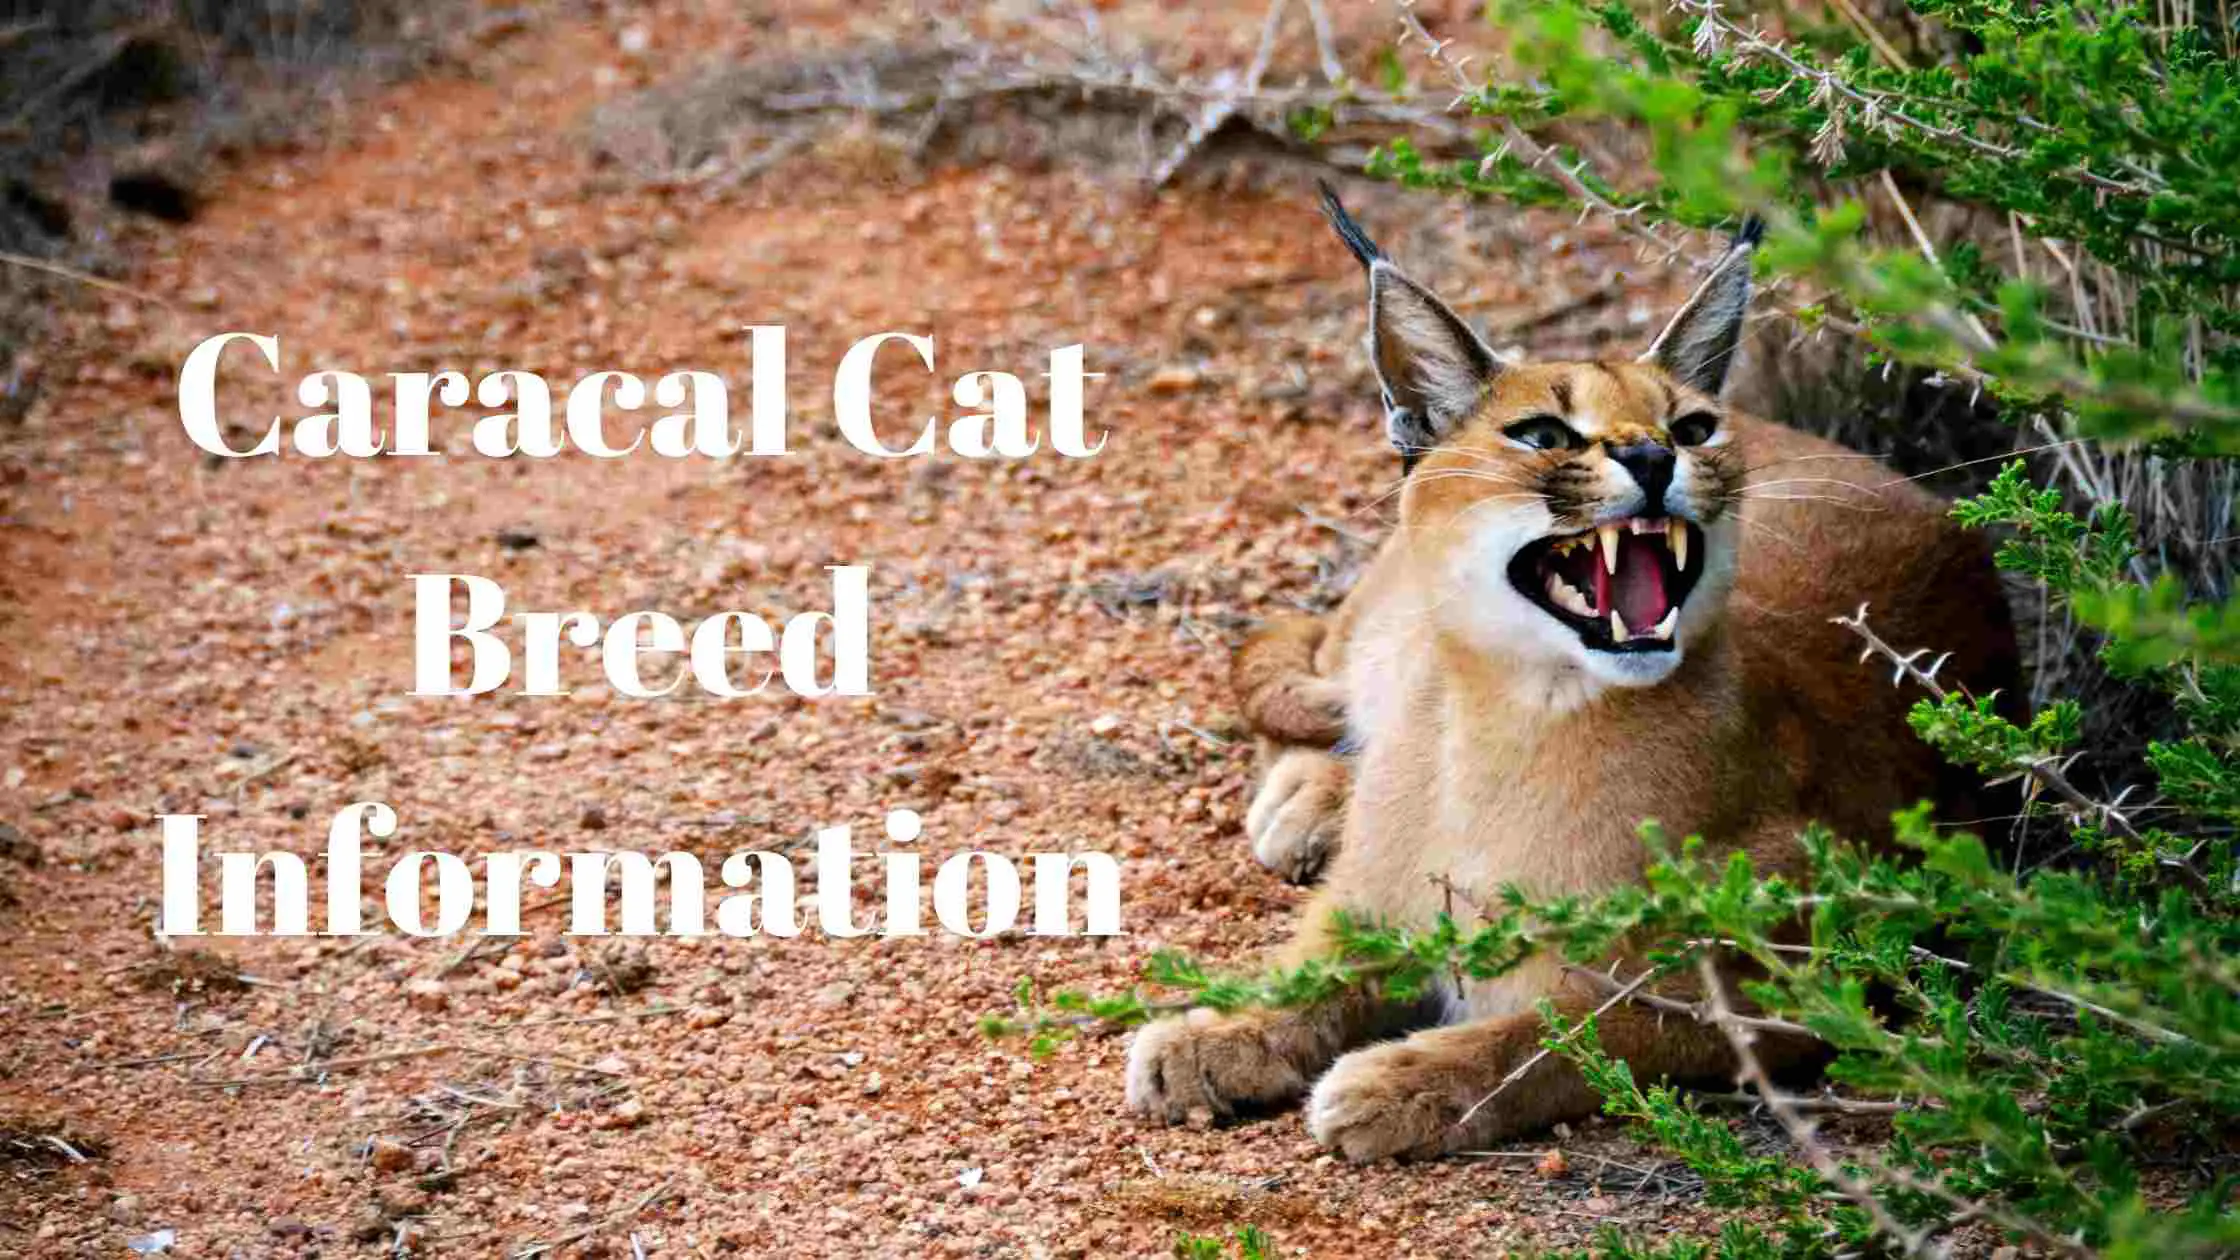 Caracal Cat